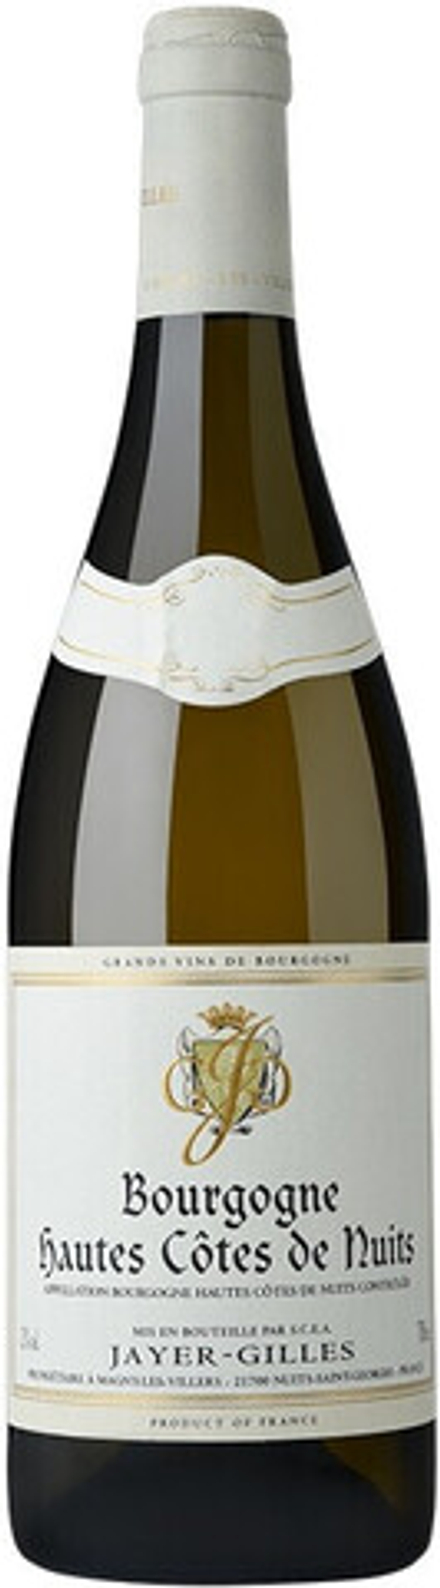 Вино Domaine Jayer-Gilles Bourgogne Hautes Cotes de Nuits, 0,75 л.